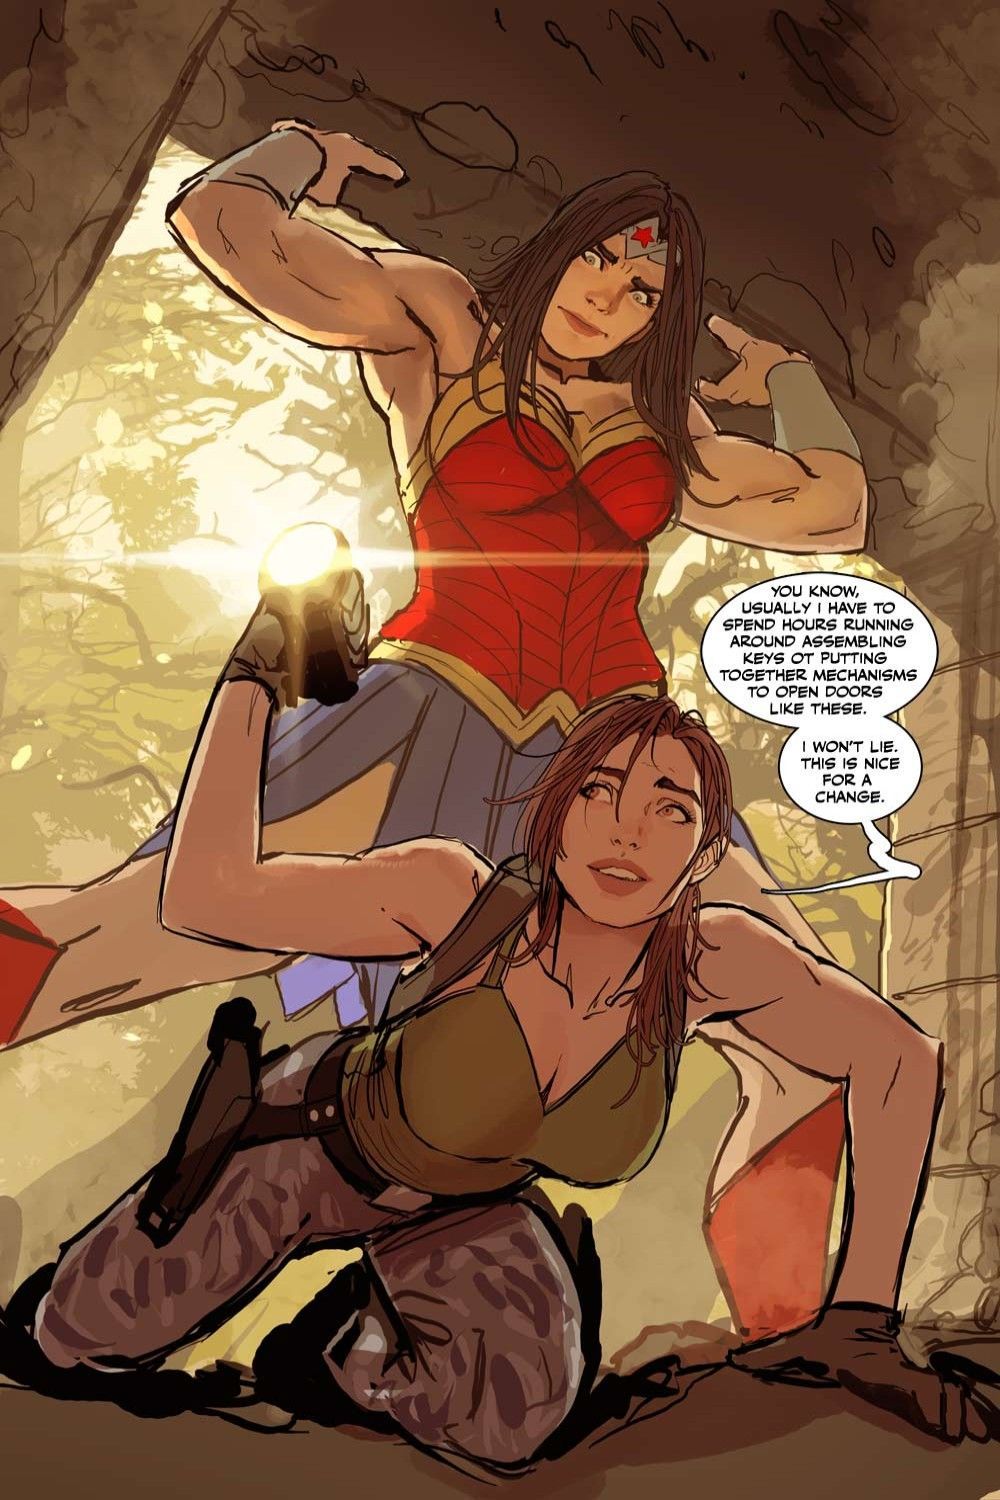 Diana X Lara : 10 images de fans de Wonder Woman et Tomb Raider que nous aimons